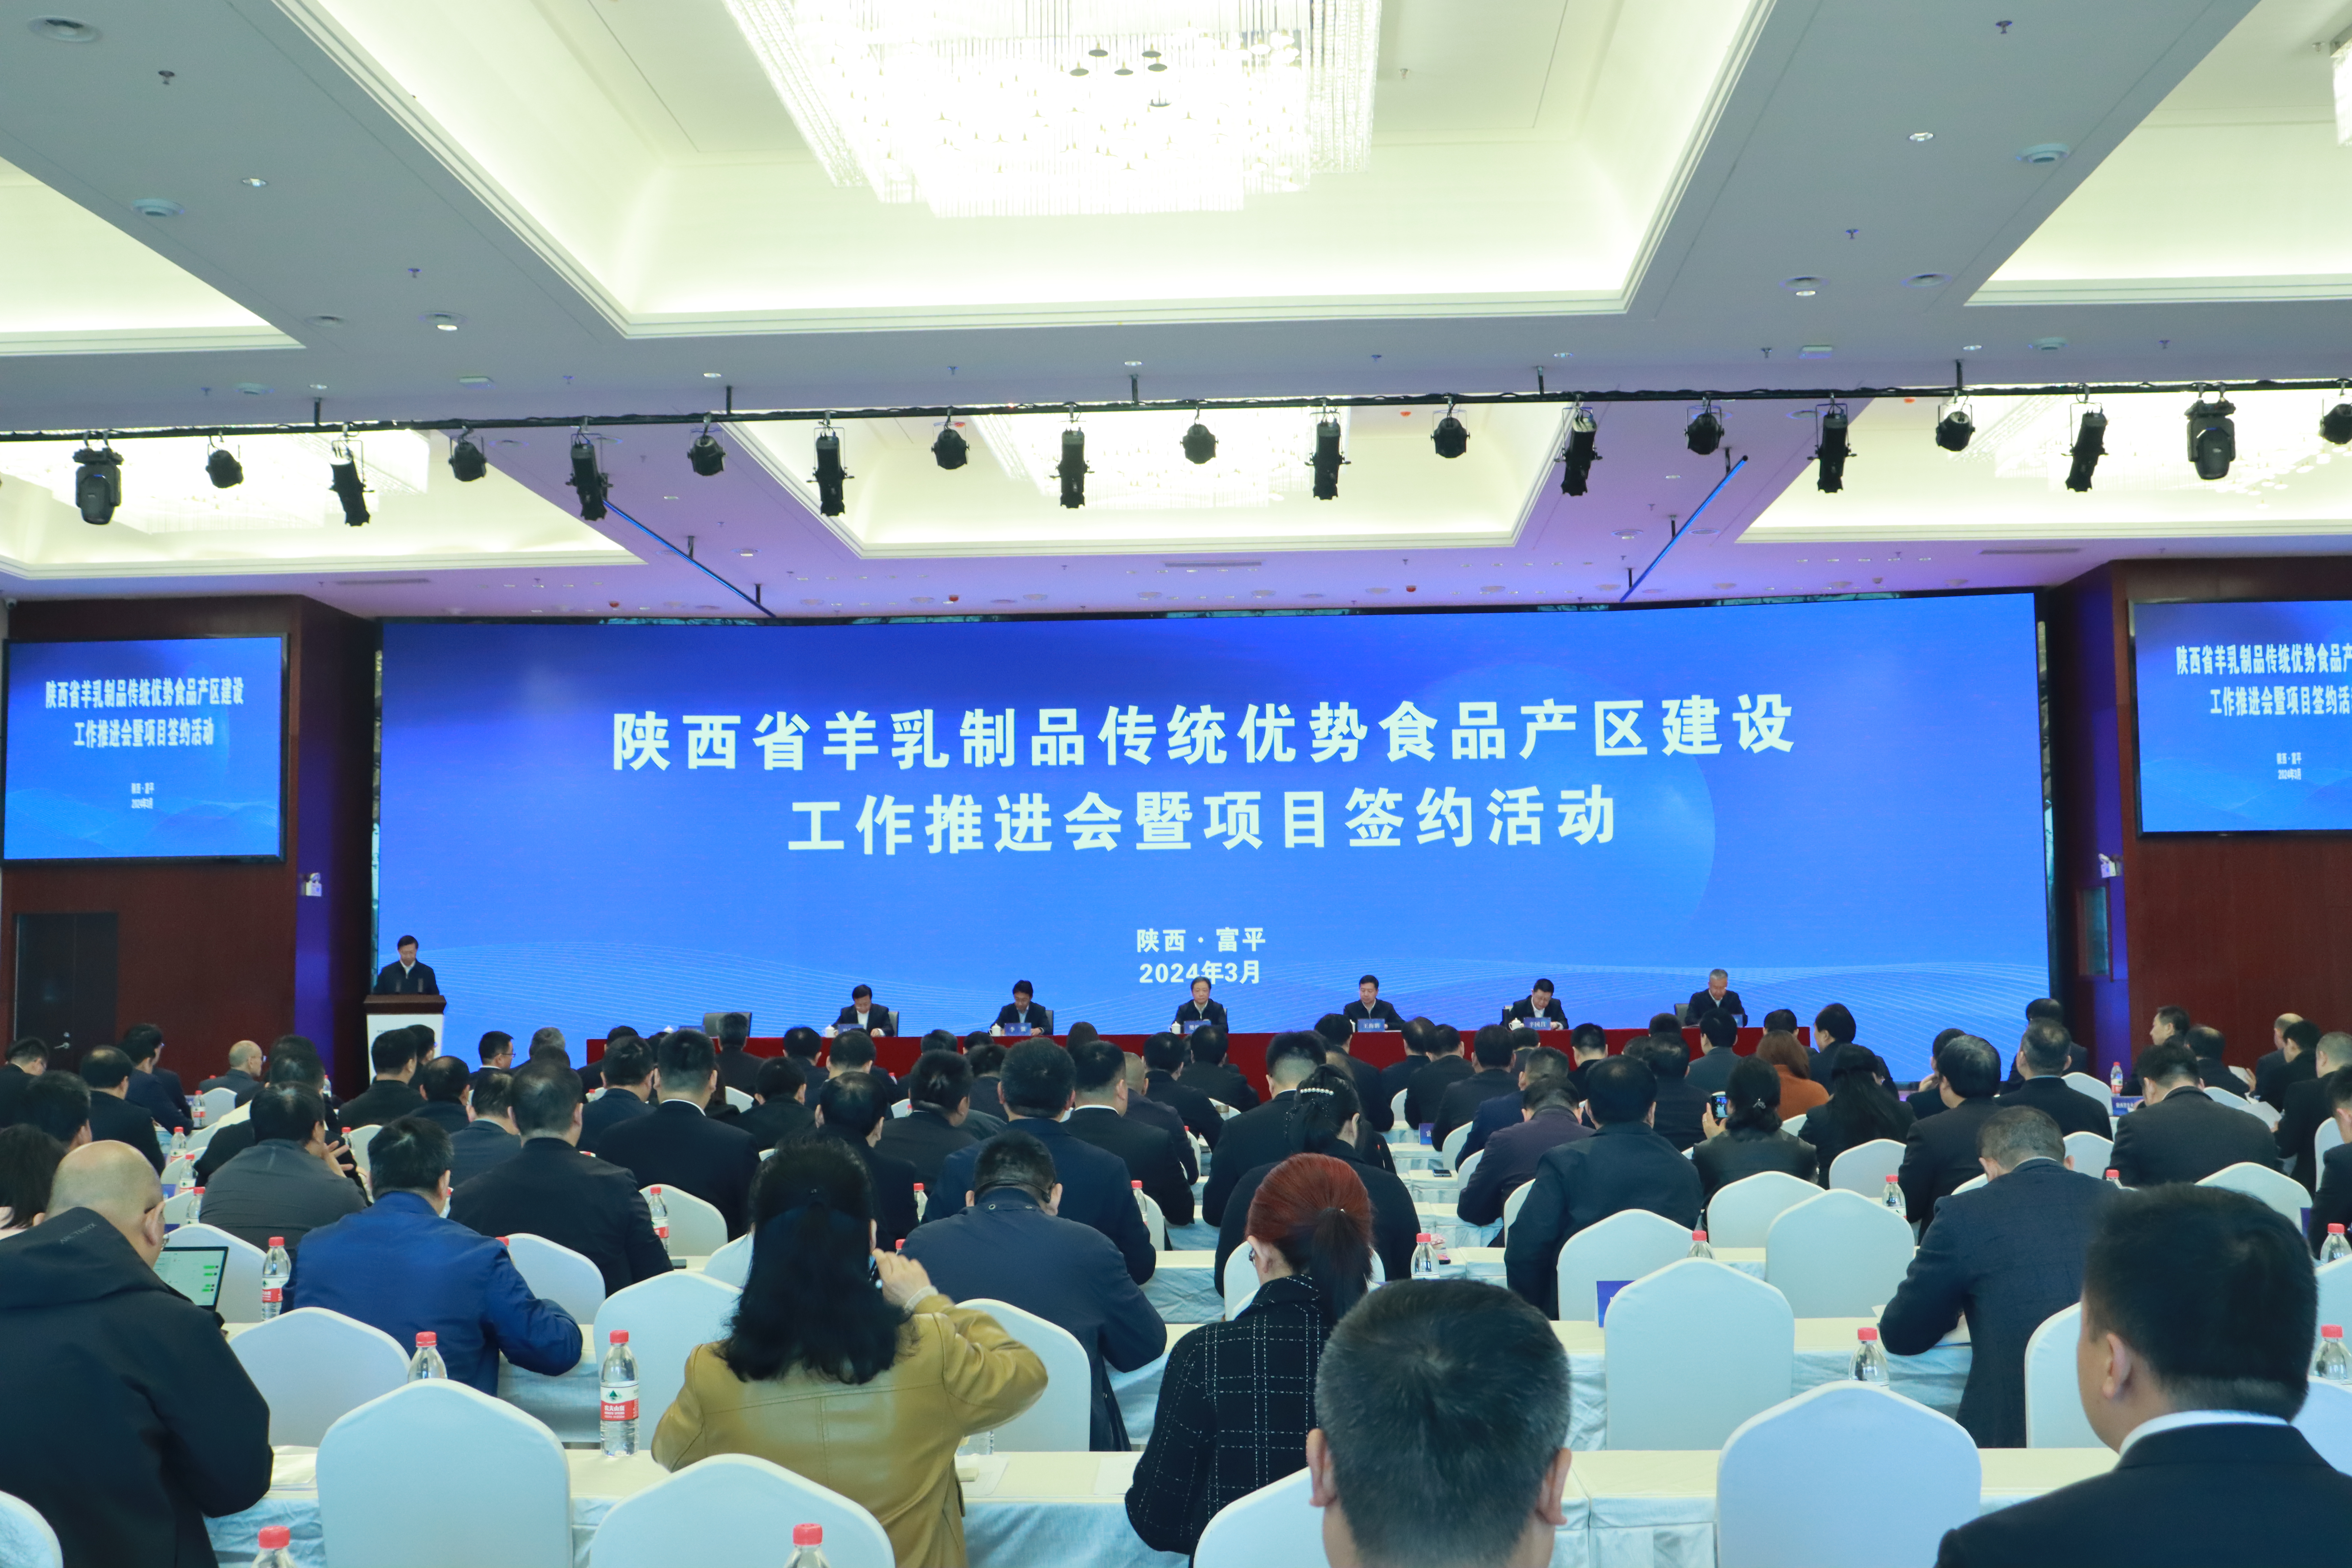 妙可蓝多出席陕西省羊乳制品产区建设推进会暨签约活动 